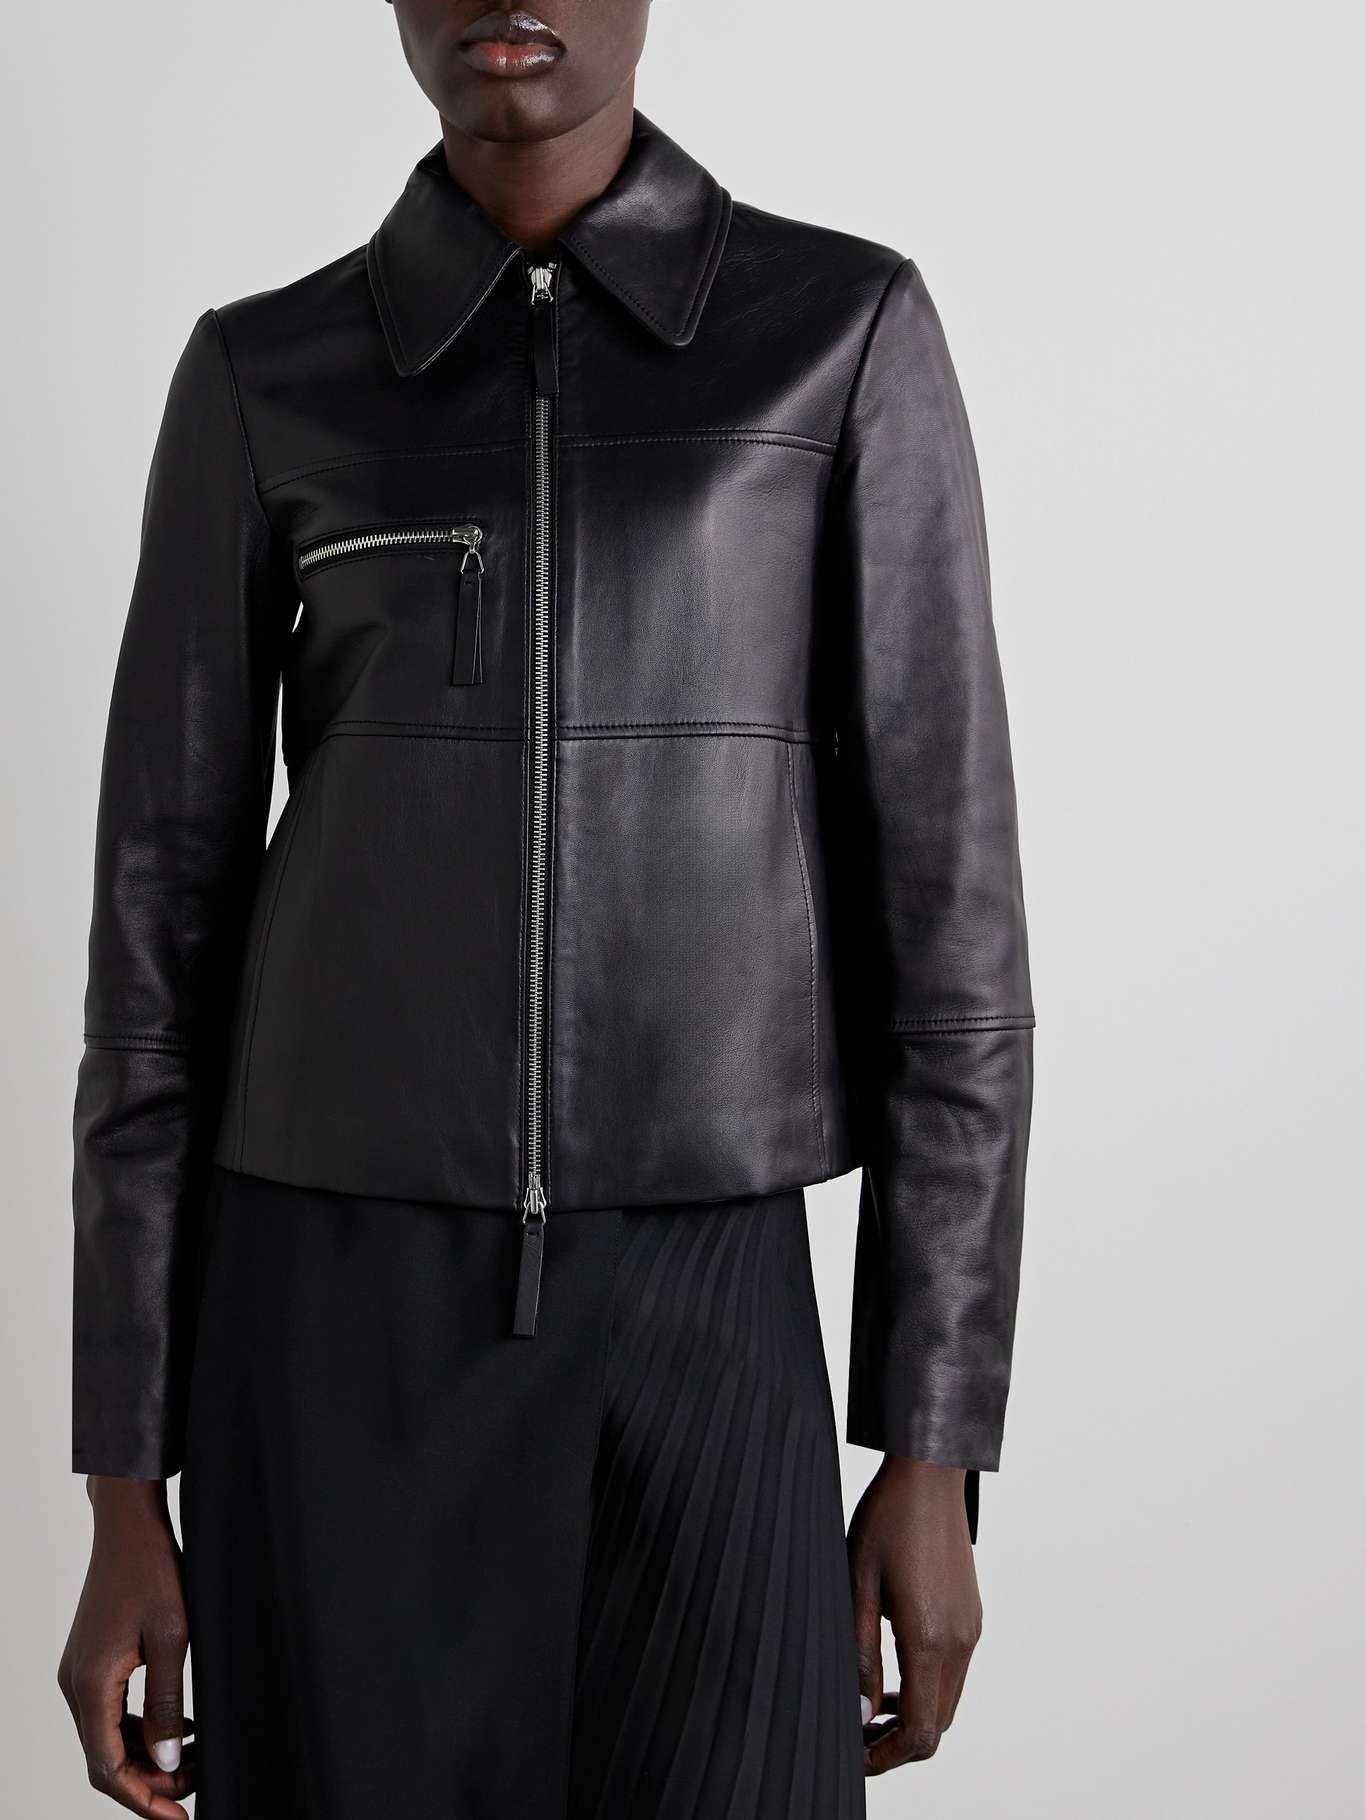 Annabel paneled leather jacket - 3